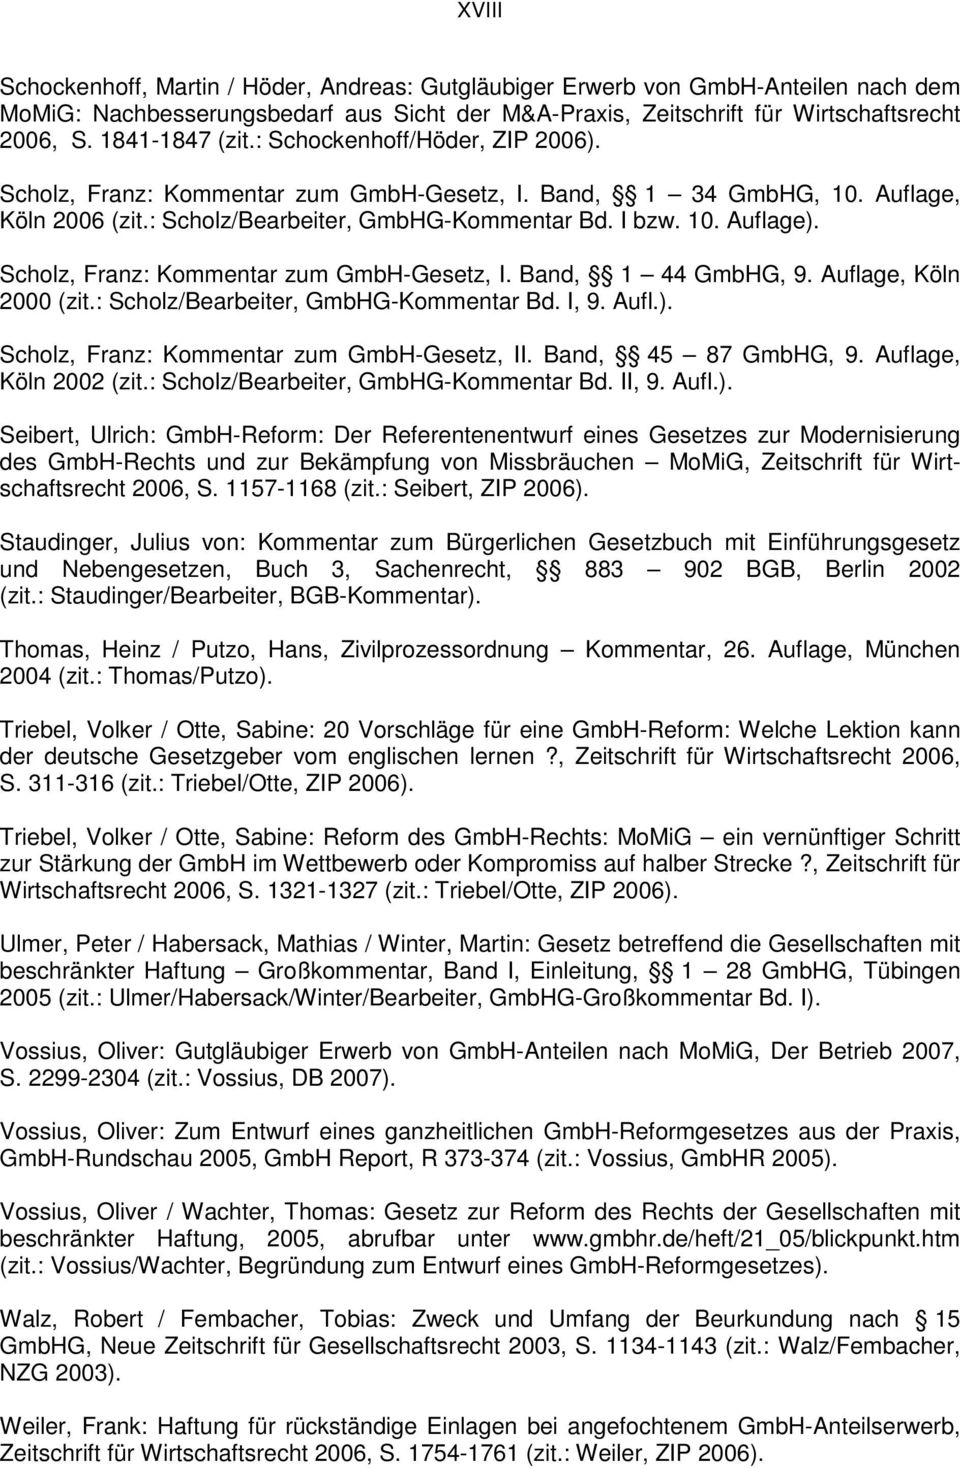 Scholz, Franz: Kommentar zum GmbH-Gesetz, I. Band, 1 44 GmbHG, 9. Auflage, Köln 2000 (zit.: Scholz/Bearbeiter, GmbHG-Kommentar Bd. I, 9. Aufl.). Scholz, Franz: Kommentar zum GmbH-Gesetz, II.